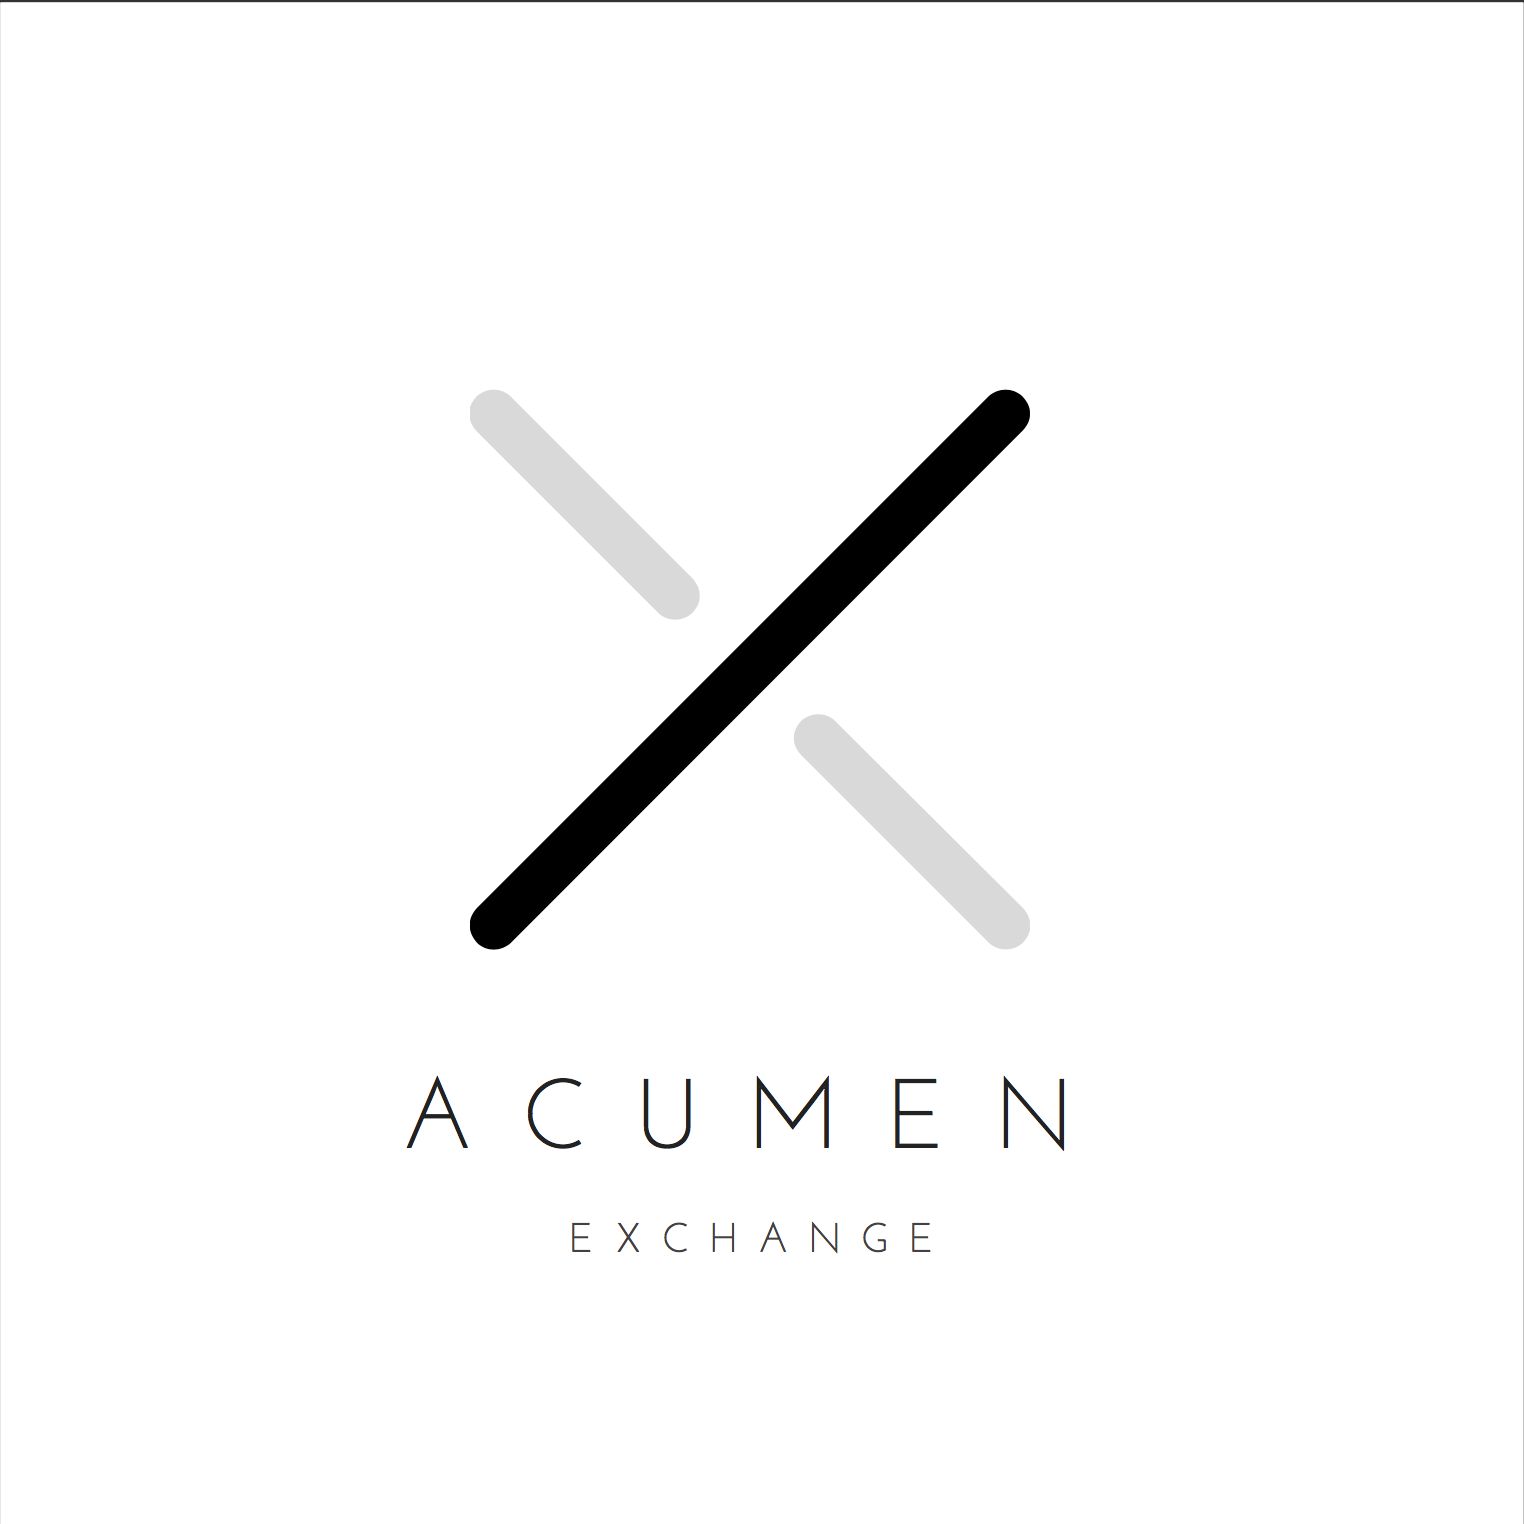 Acumen Exchange